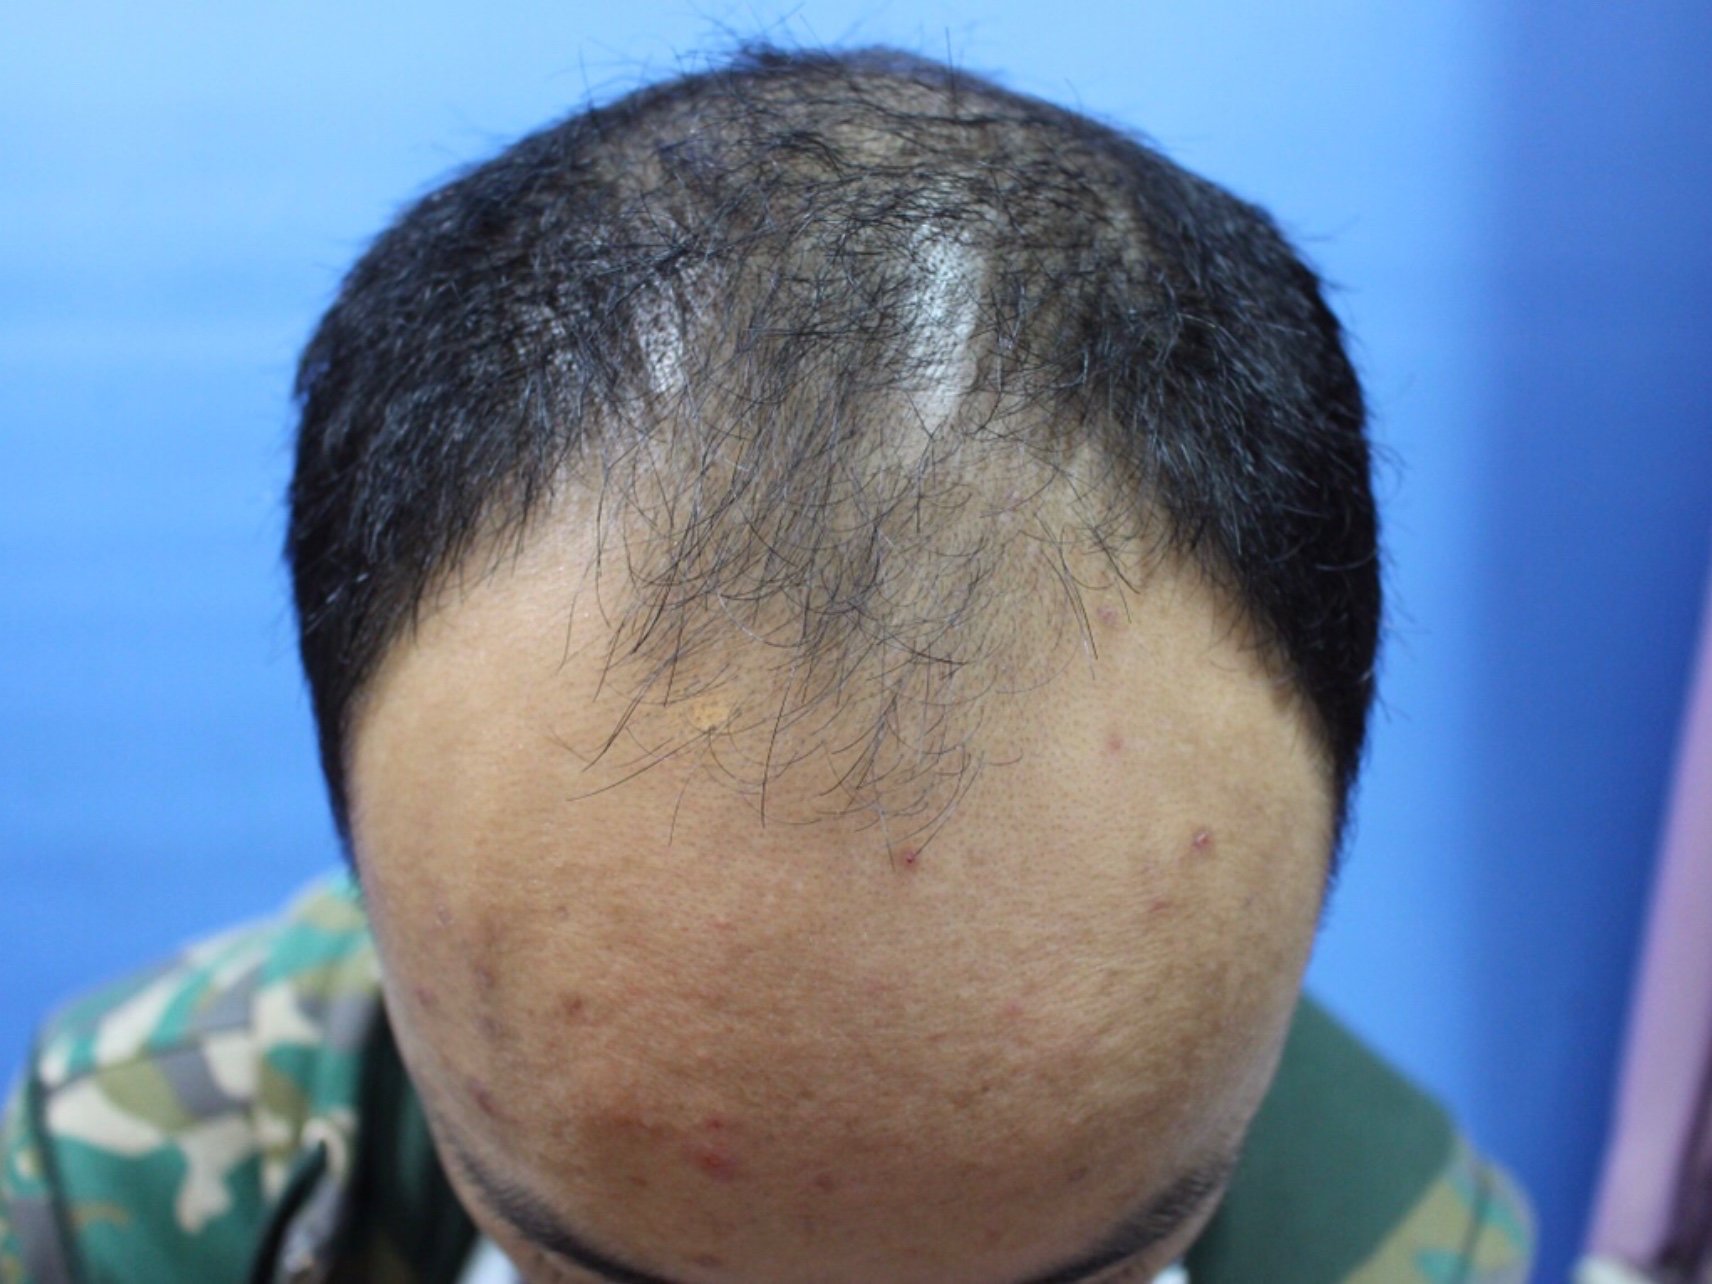 斑秃,俗称鬼剃头, 是一种比较特殊的脱发,患者头